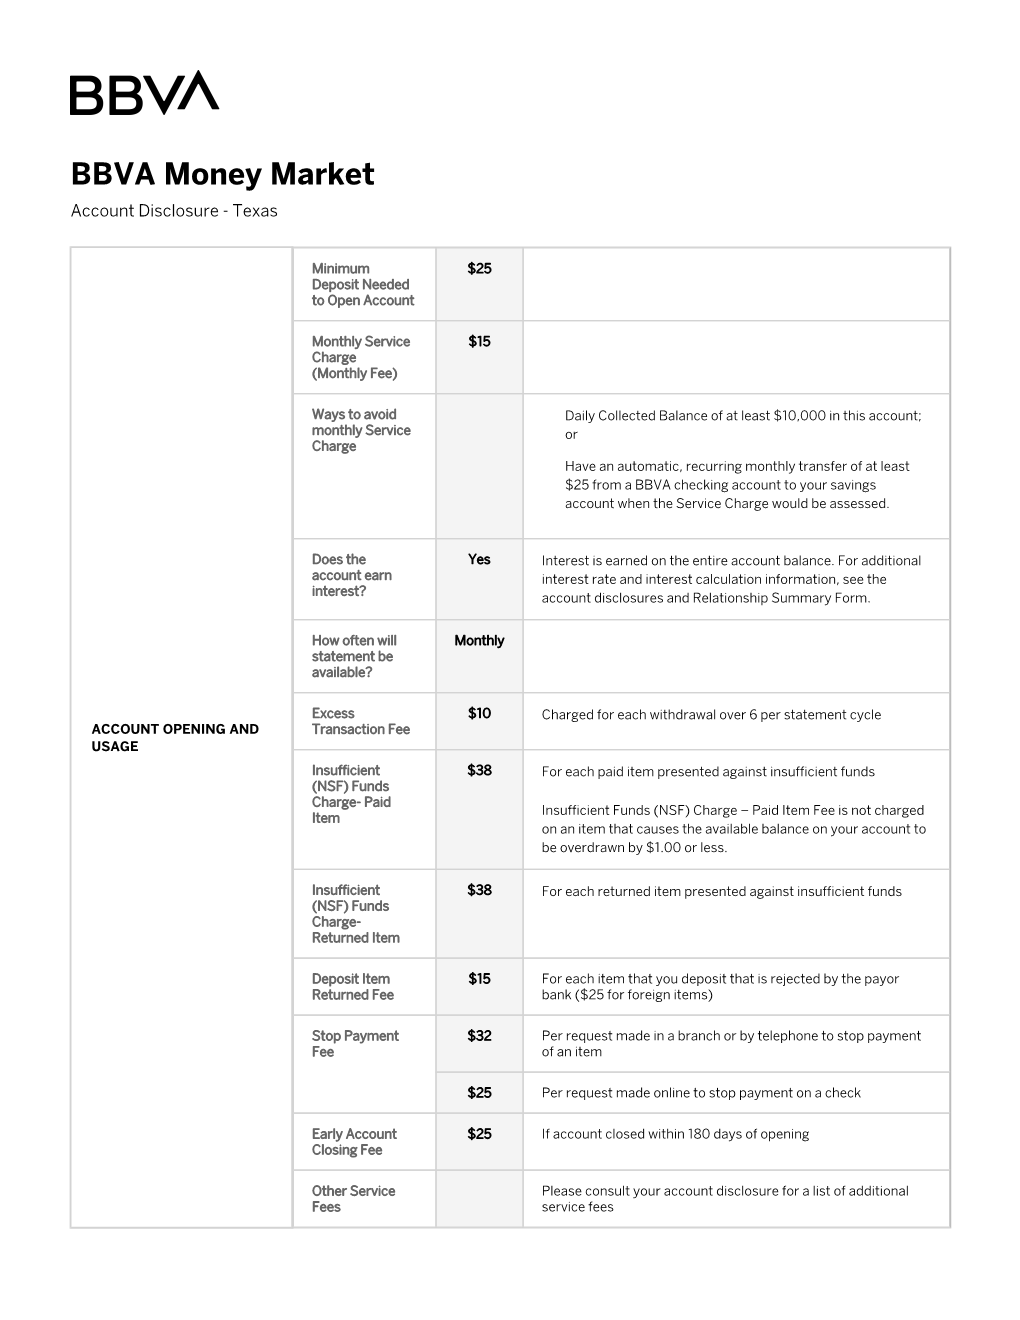 BBVA Money Market Account Disclosure | Texas | BBVA